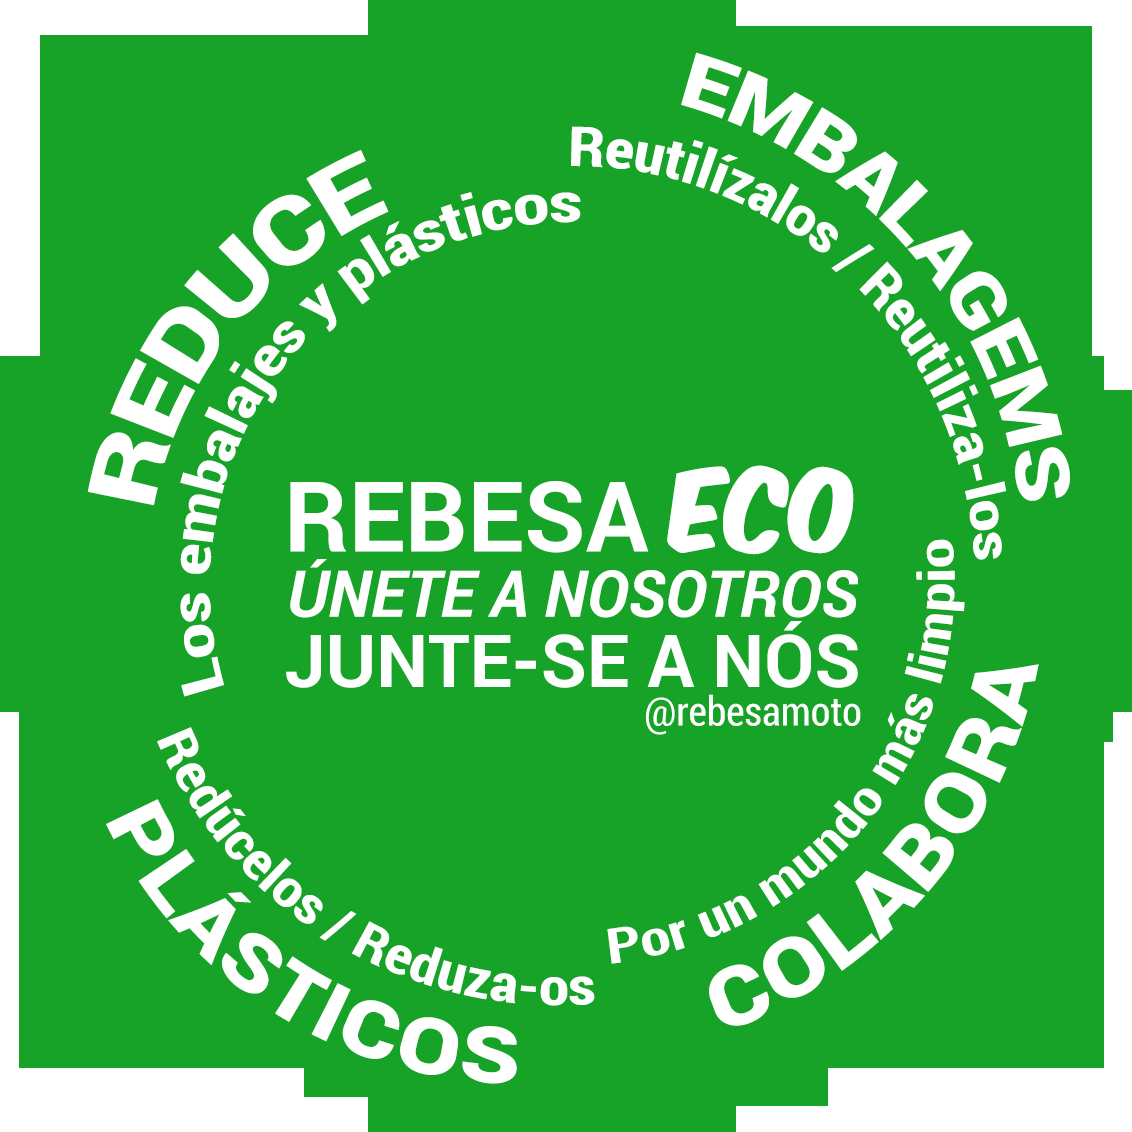 Rebesa ECO campaign